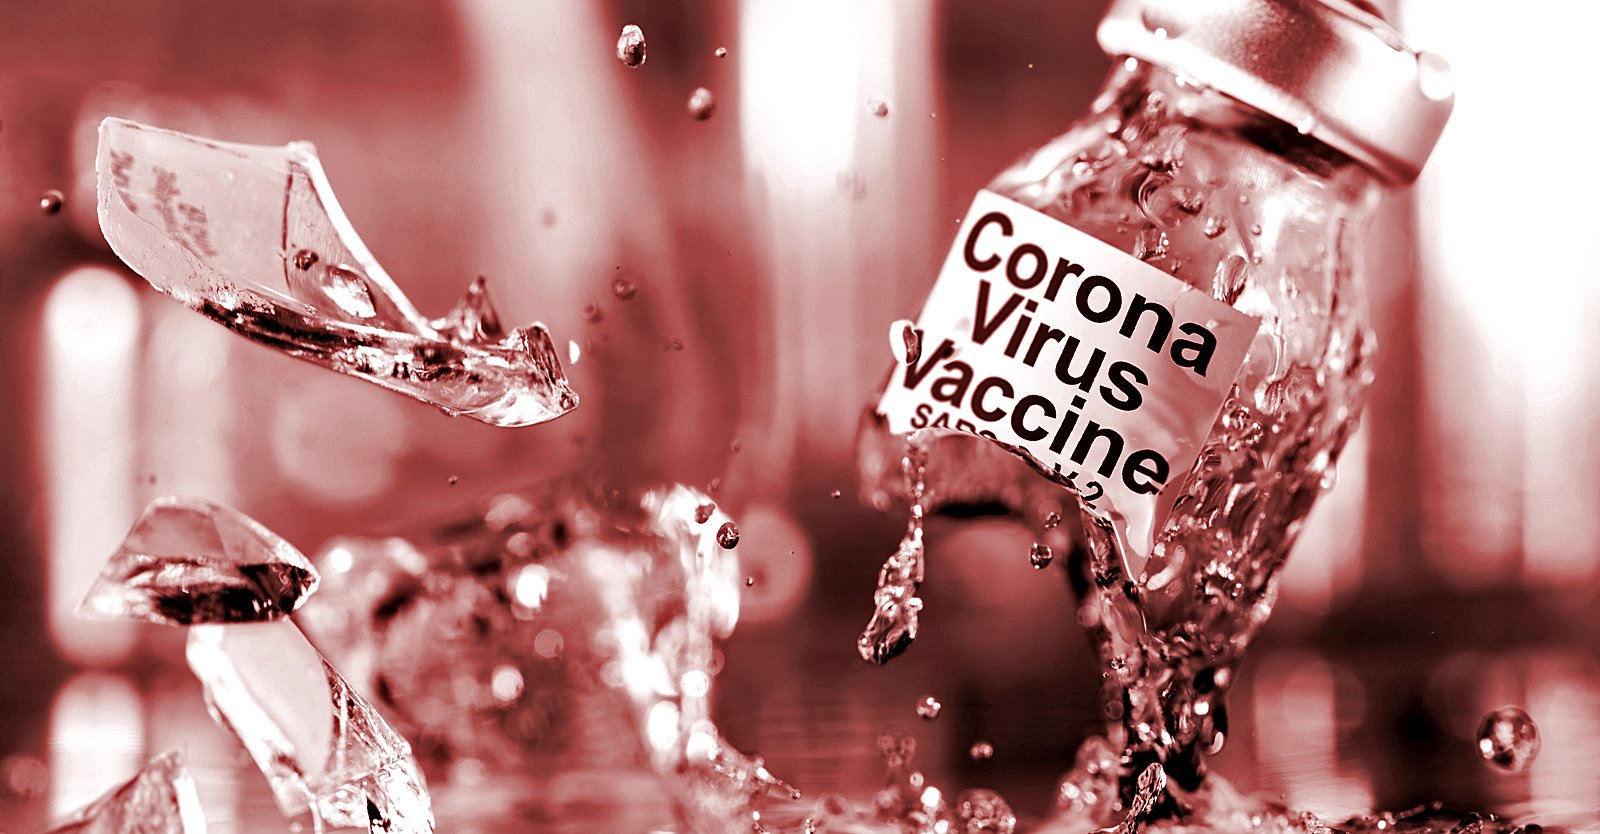 우리 정부가 코로나 백신으로 인한 피해 보상을 원하지 않는다는 증거입니다.